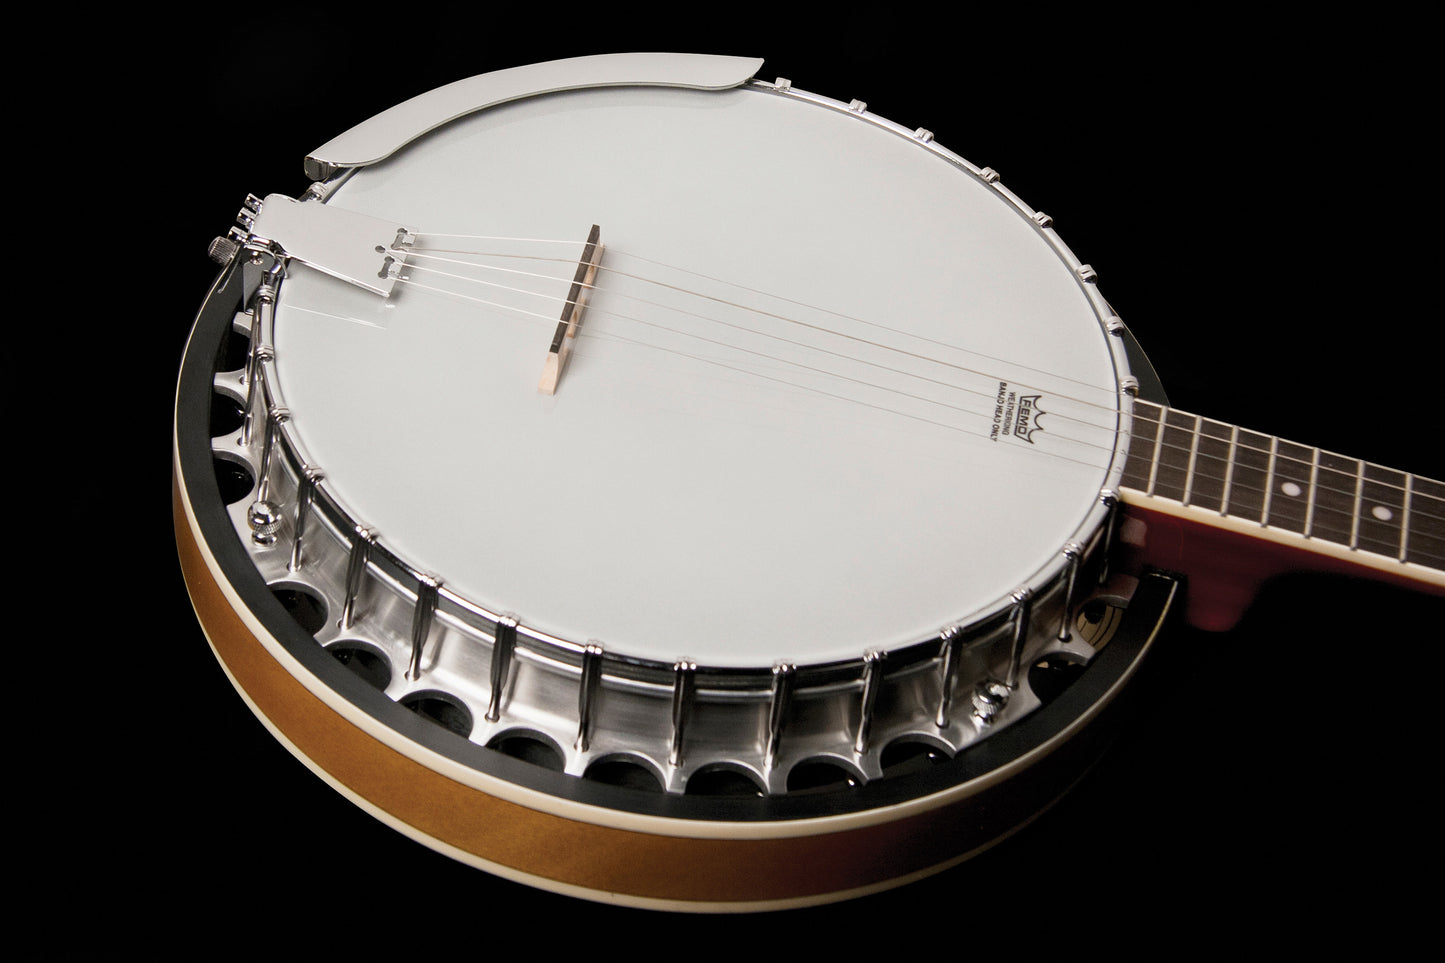 Washburn B9 Americana Series (5 String) Banjo. Sunburst Item ID: B9-WSH-A-U